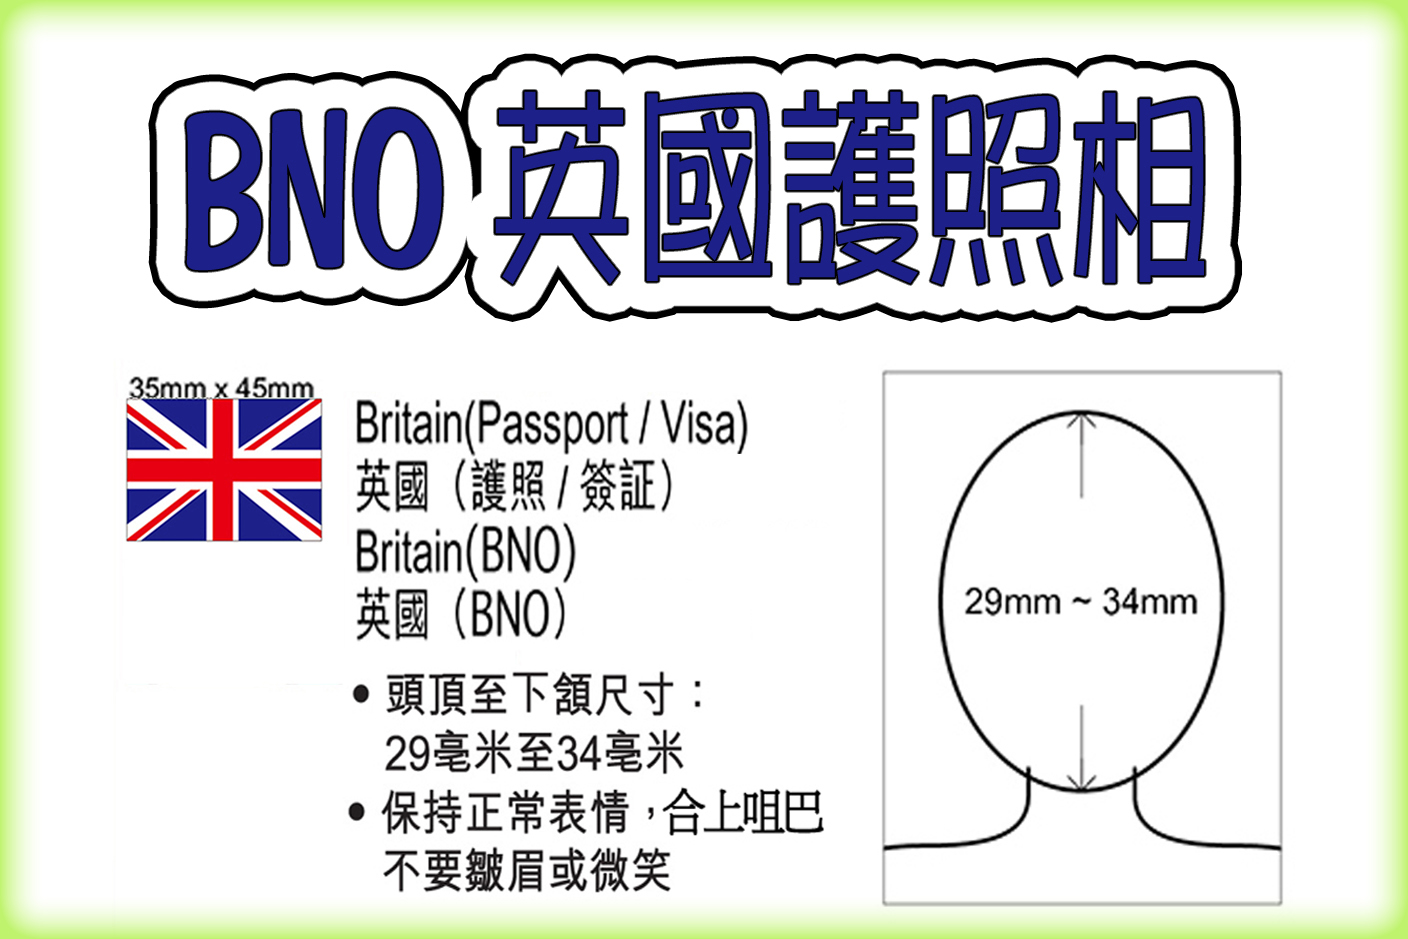 UK Passport/Visa